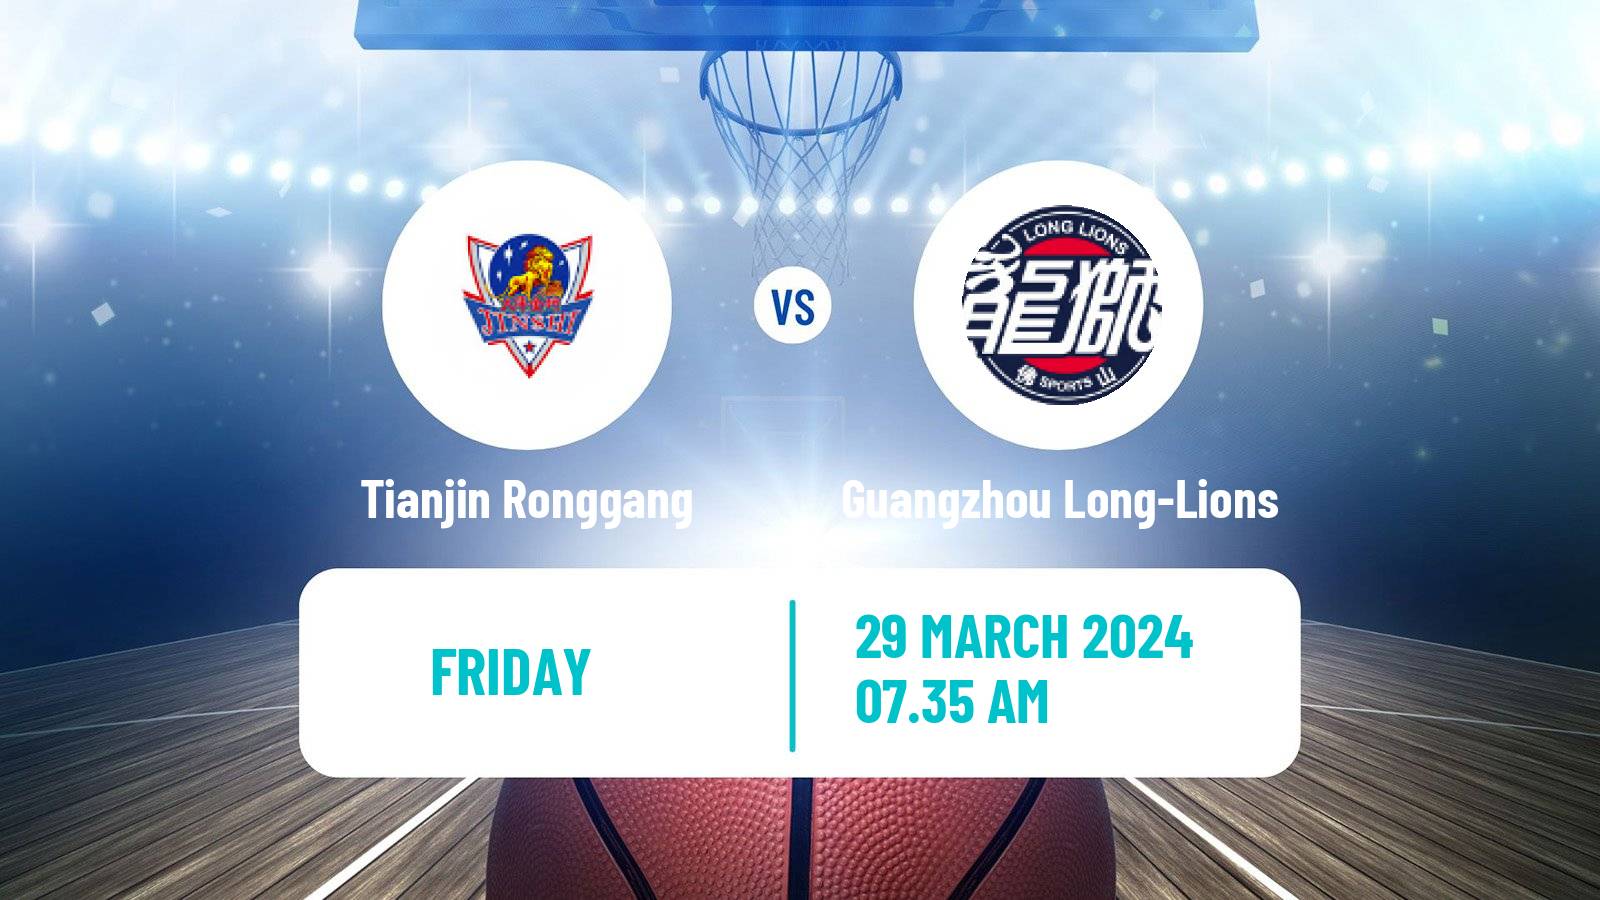 Basketball CBA Tianjin Ronggang - Guangzhou Long-Lions